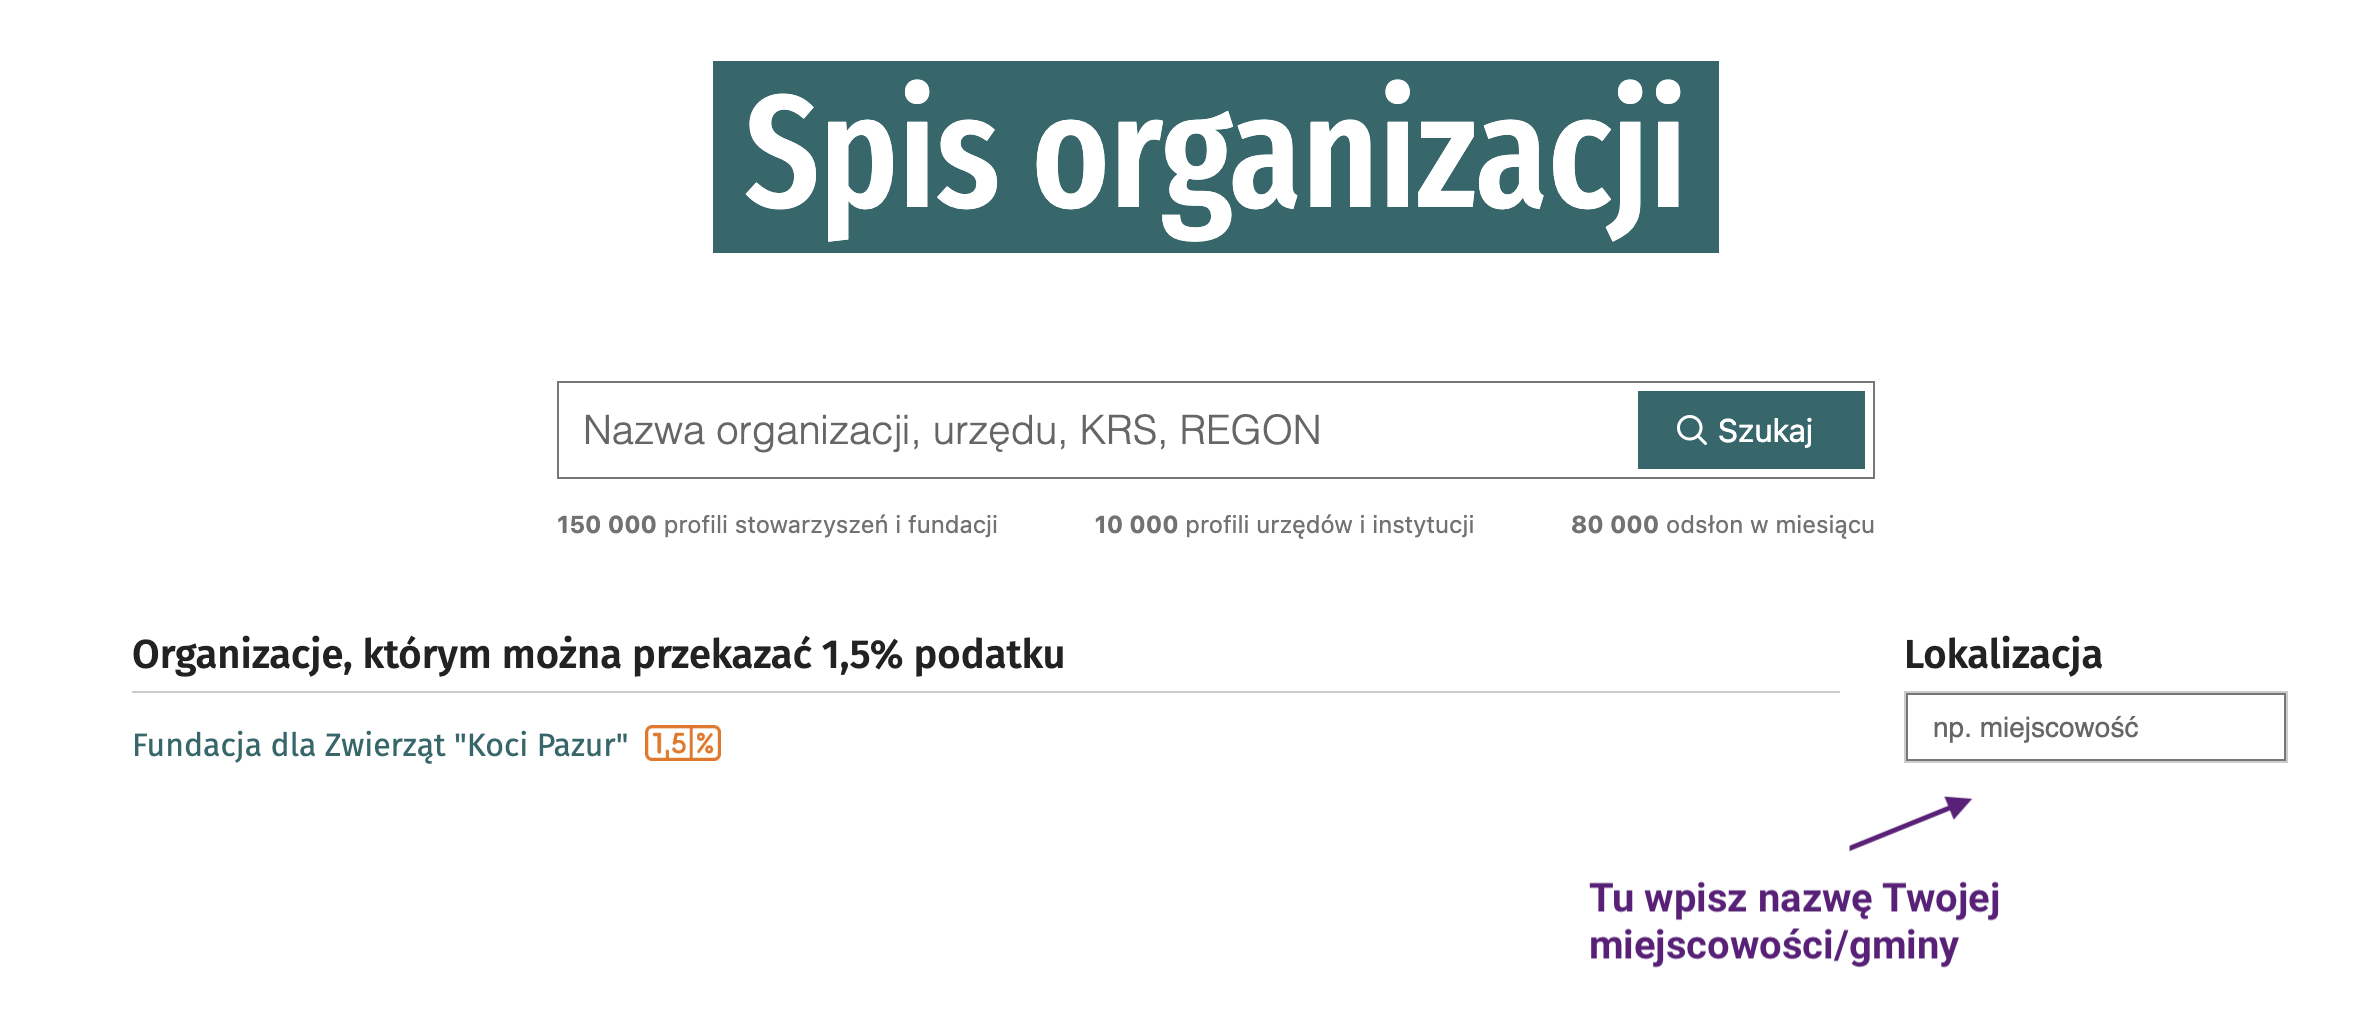 Spis organizacji pozarządowych w Polsce